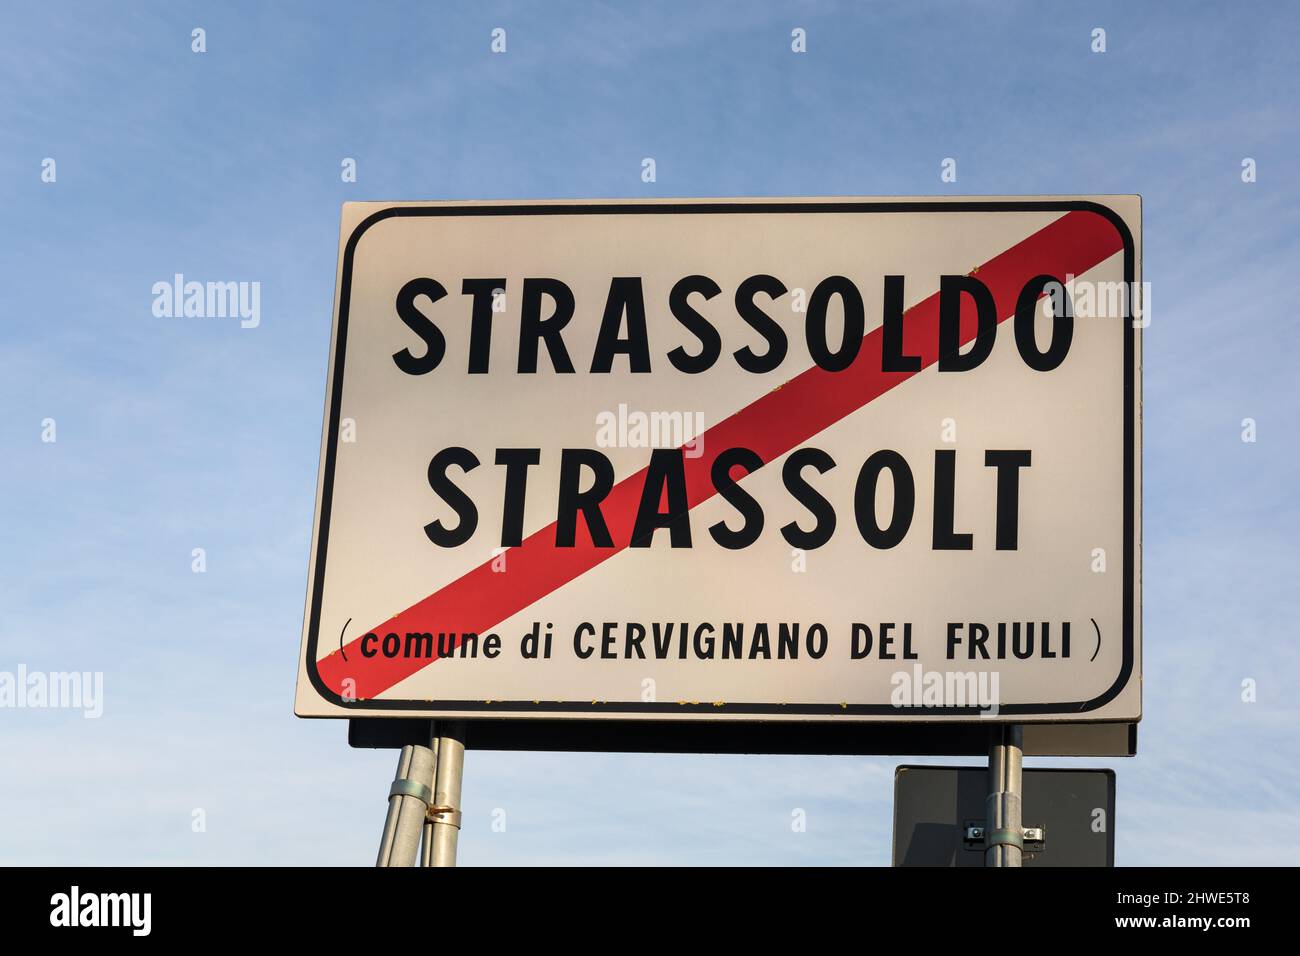 Strassoldo road sign, Italy Stock Photo